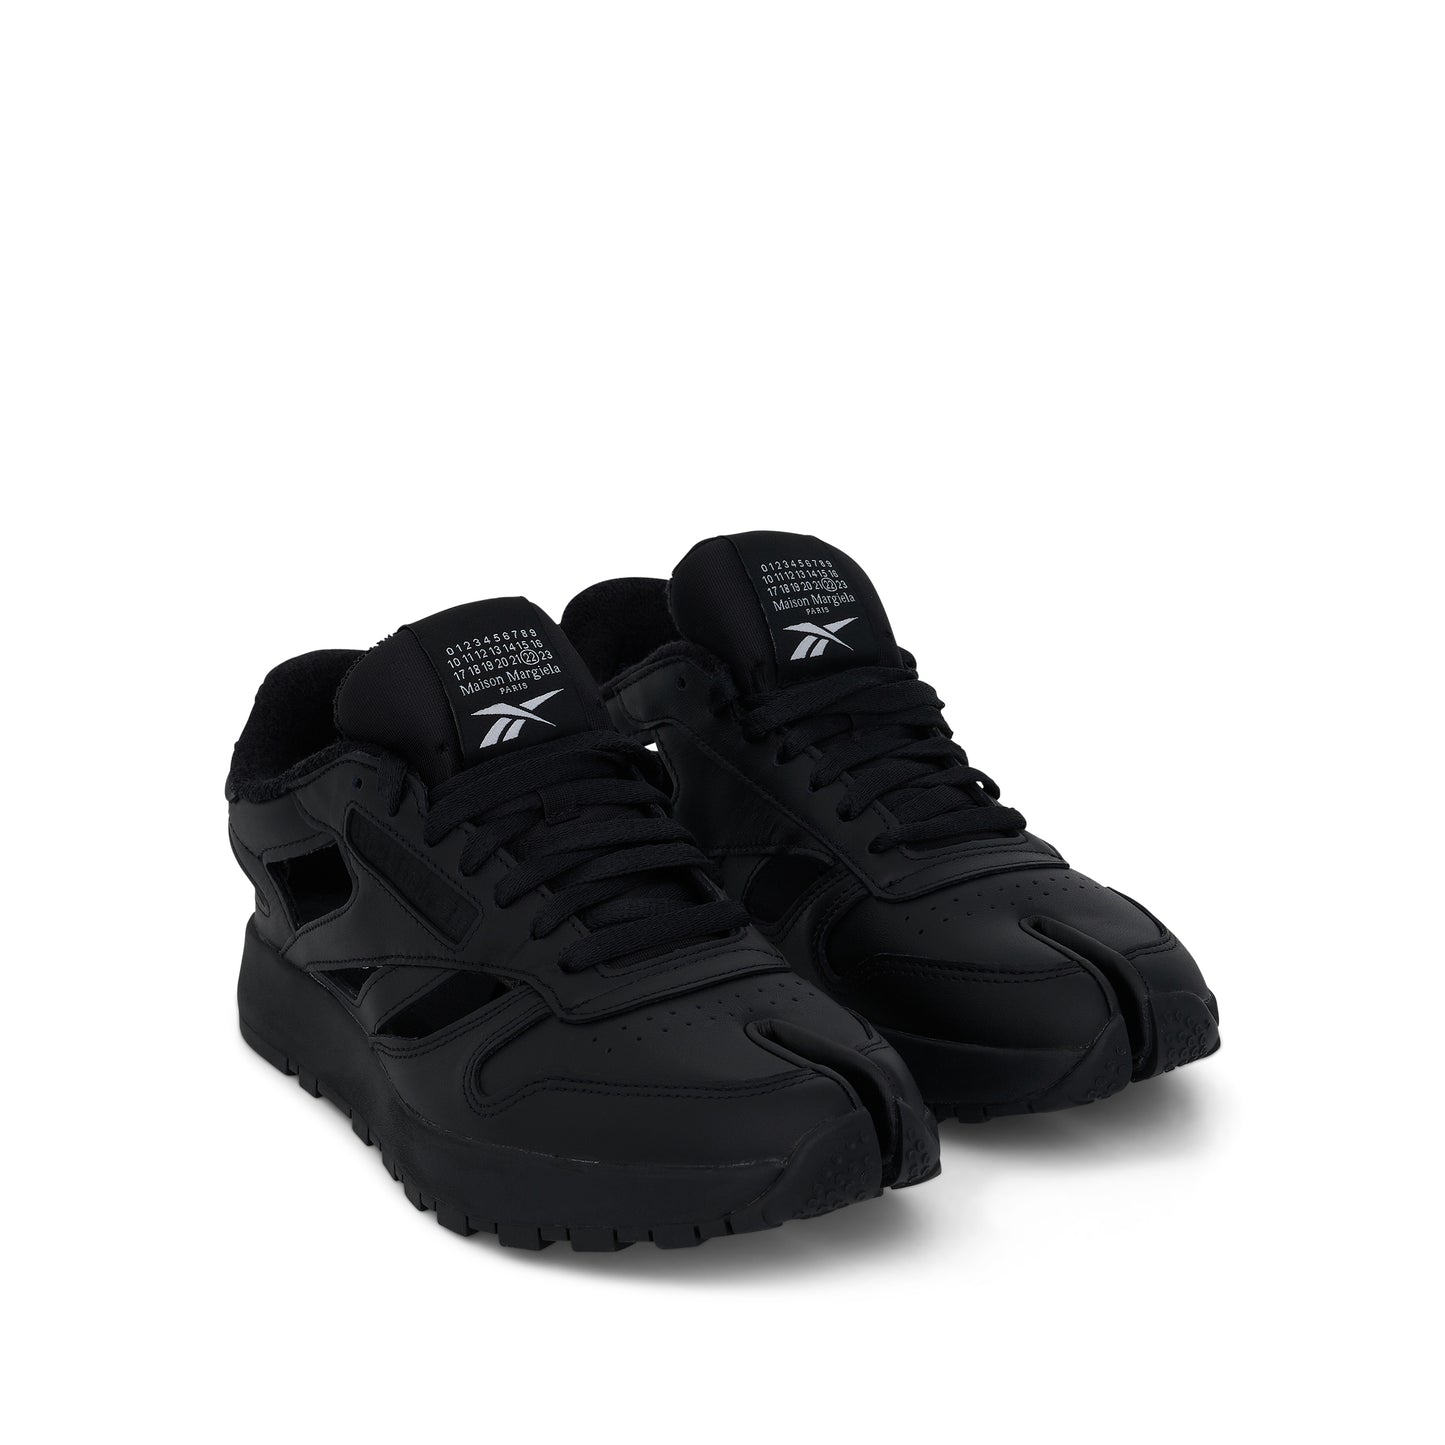 Maison Margiela x Reebok Tabi Gladiator Low Sneaker in Black